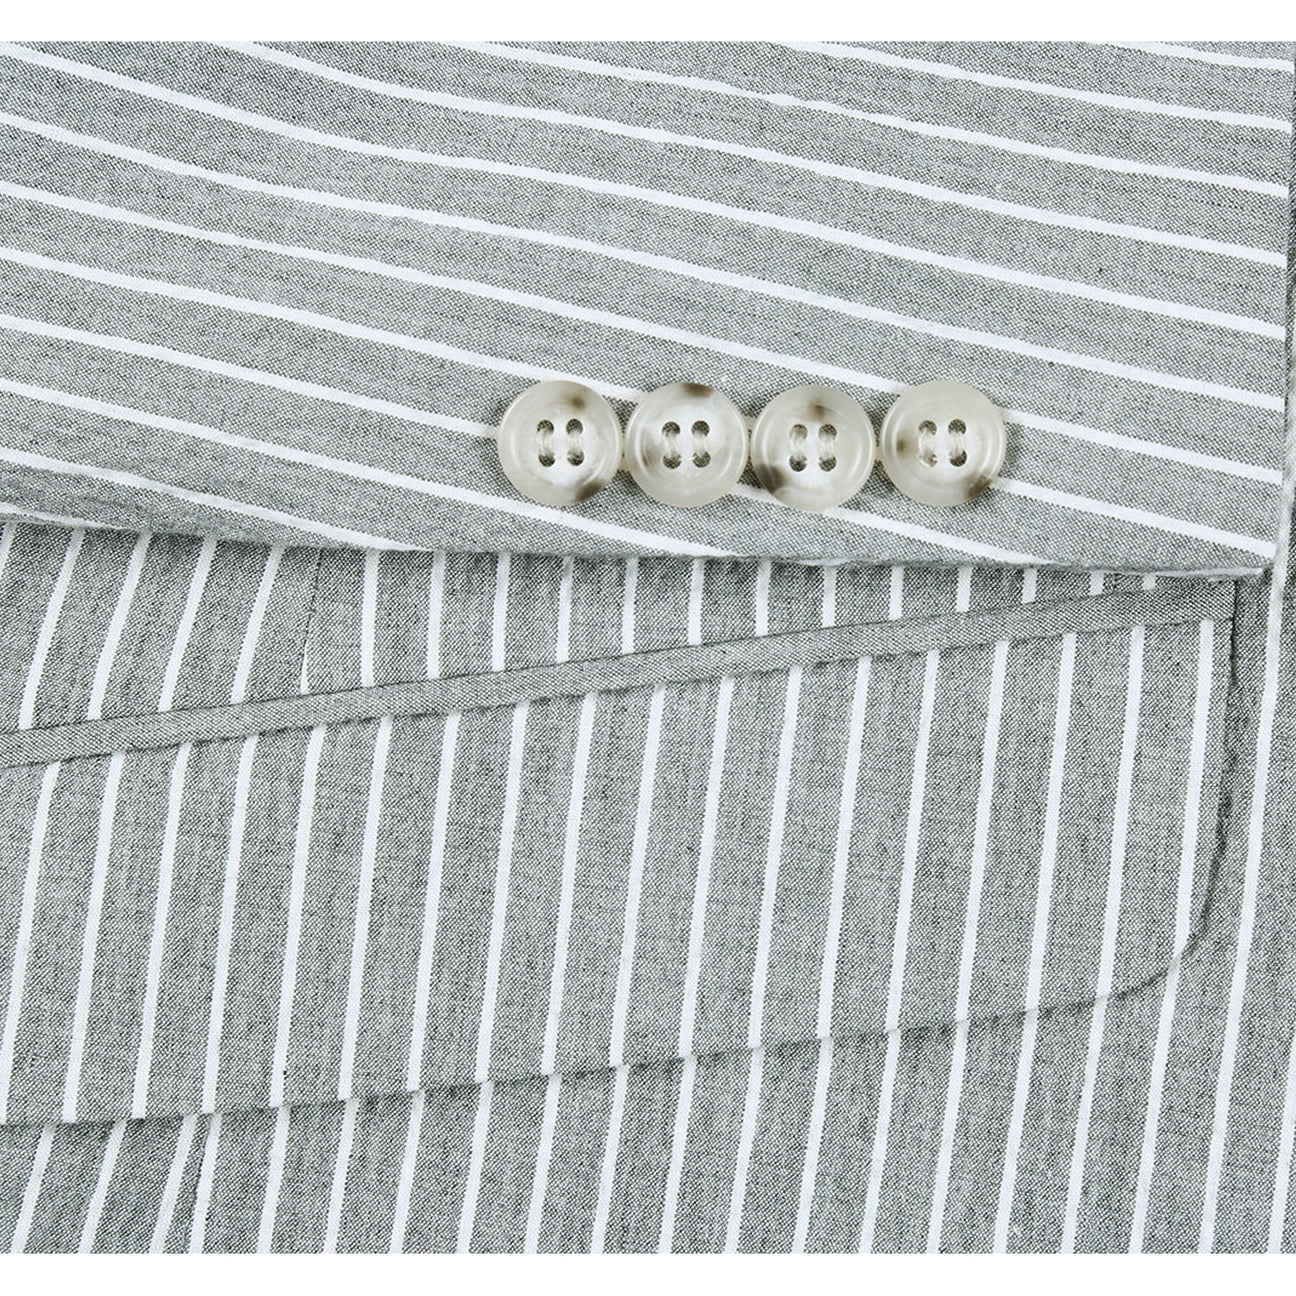 RENOIR Gray Slim Fit Notch Lapels Stripe Cotton Suit 611-1